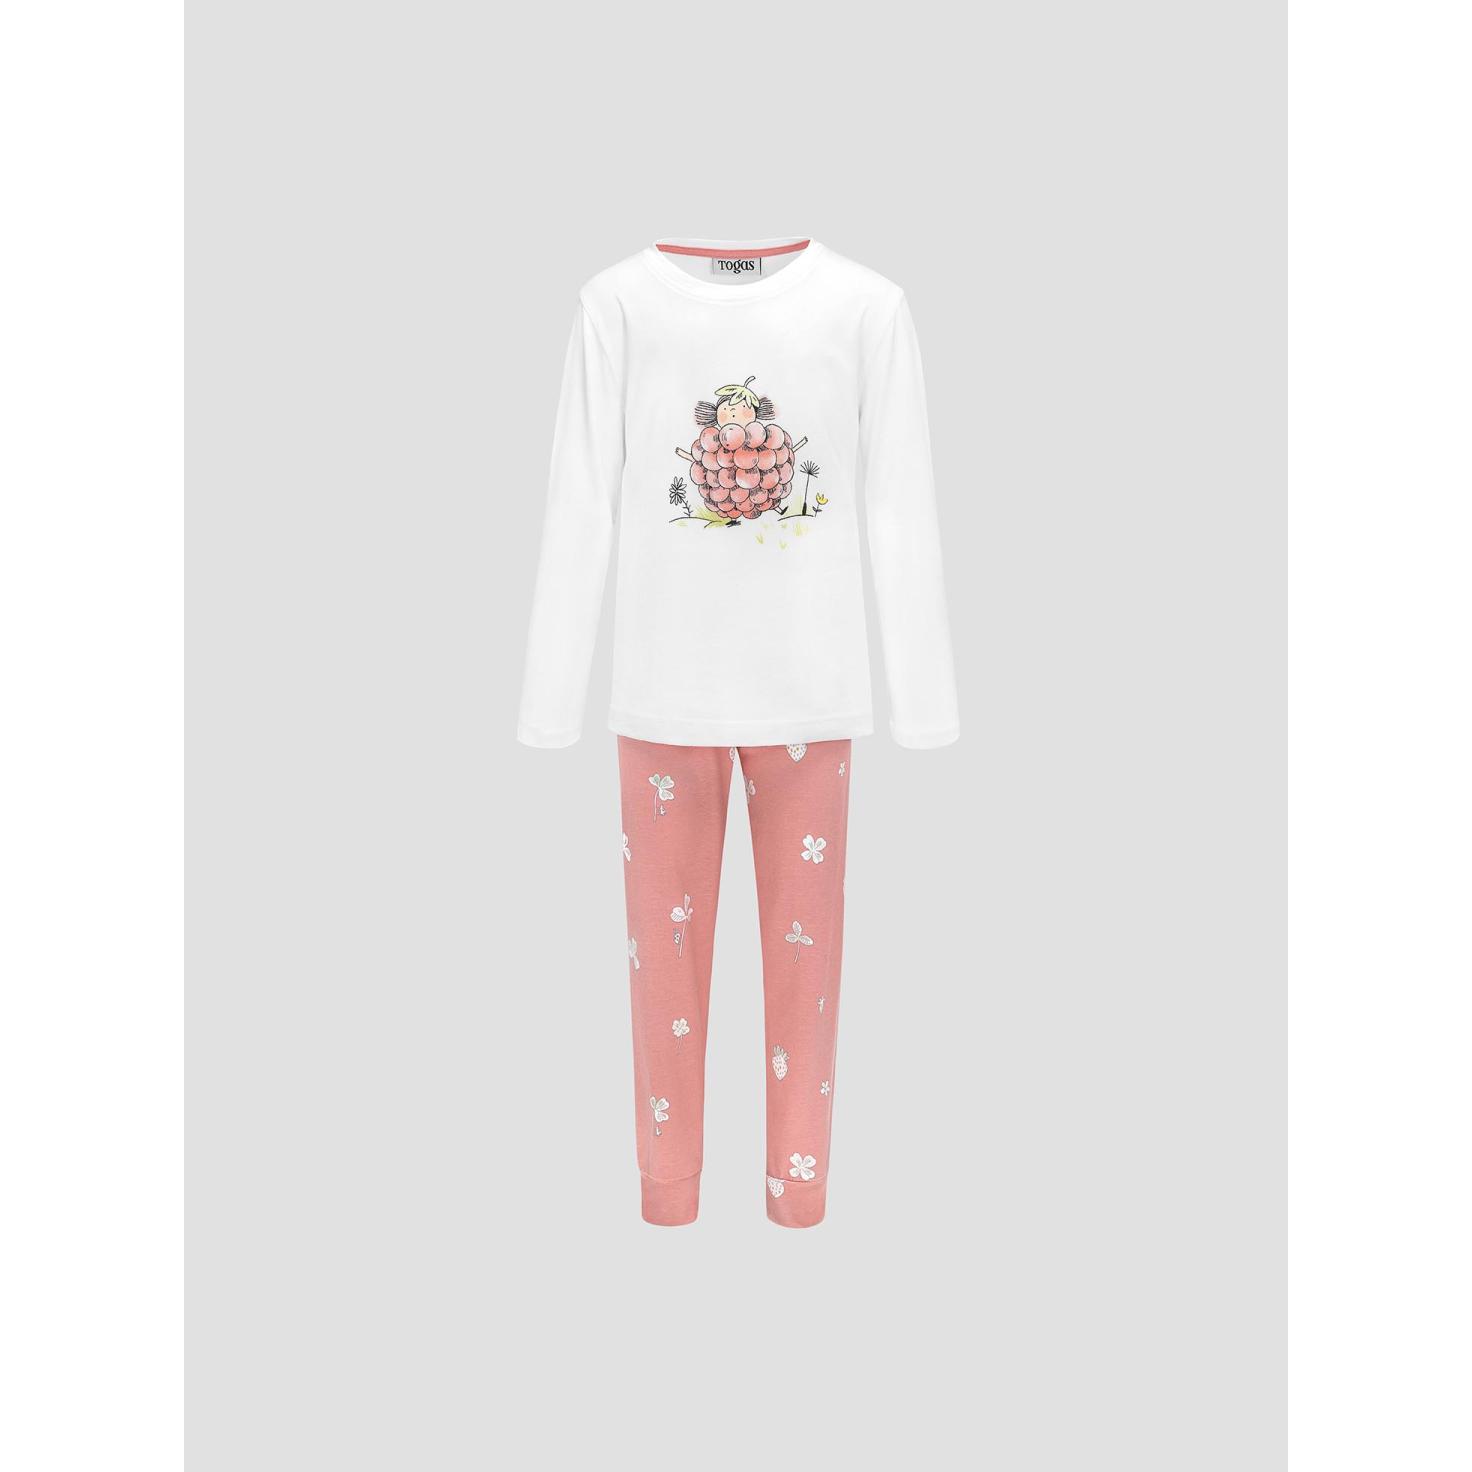 Пижама для девочек Kids by togas Стробби бело-розовый 128-134 см